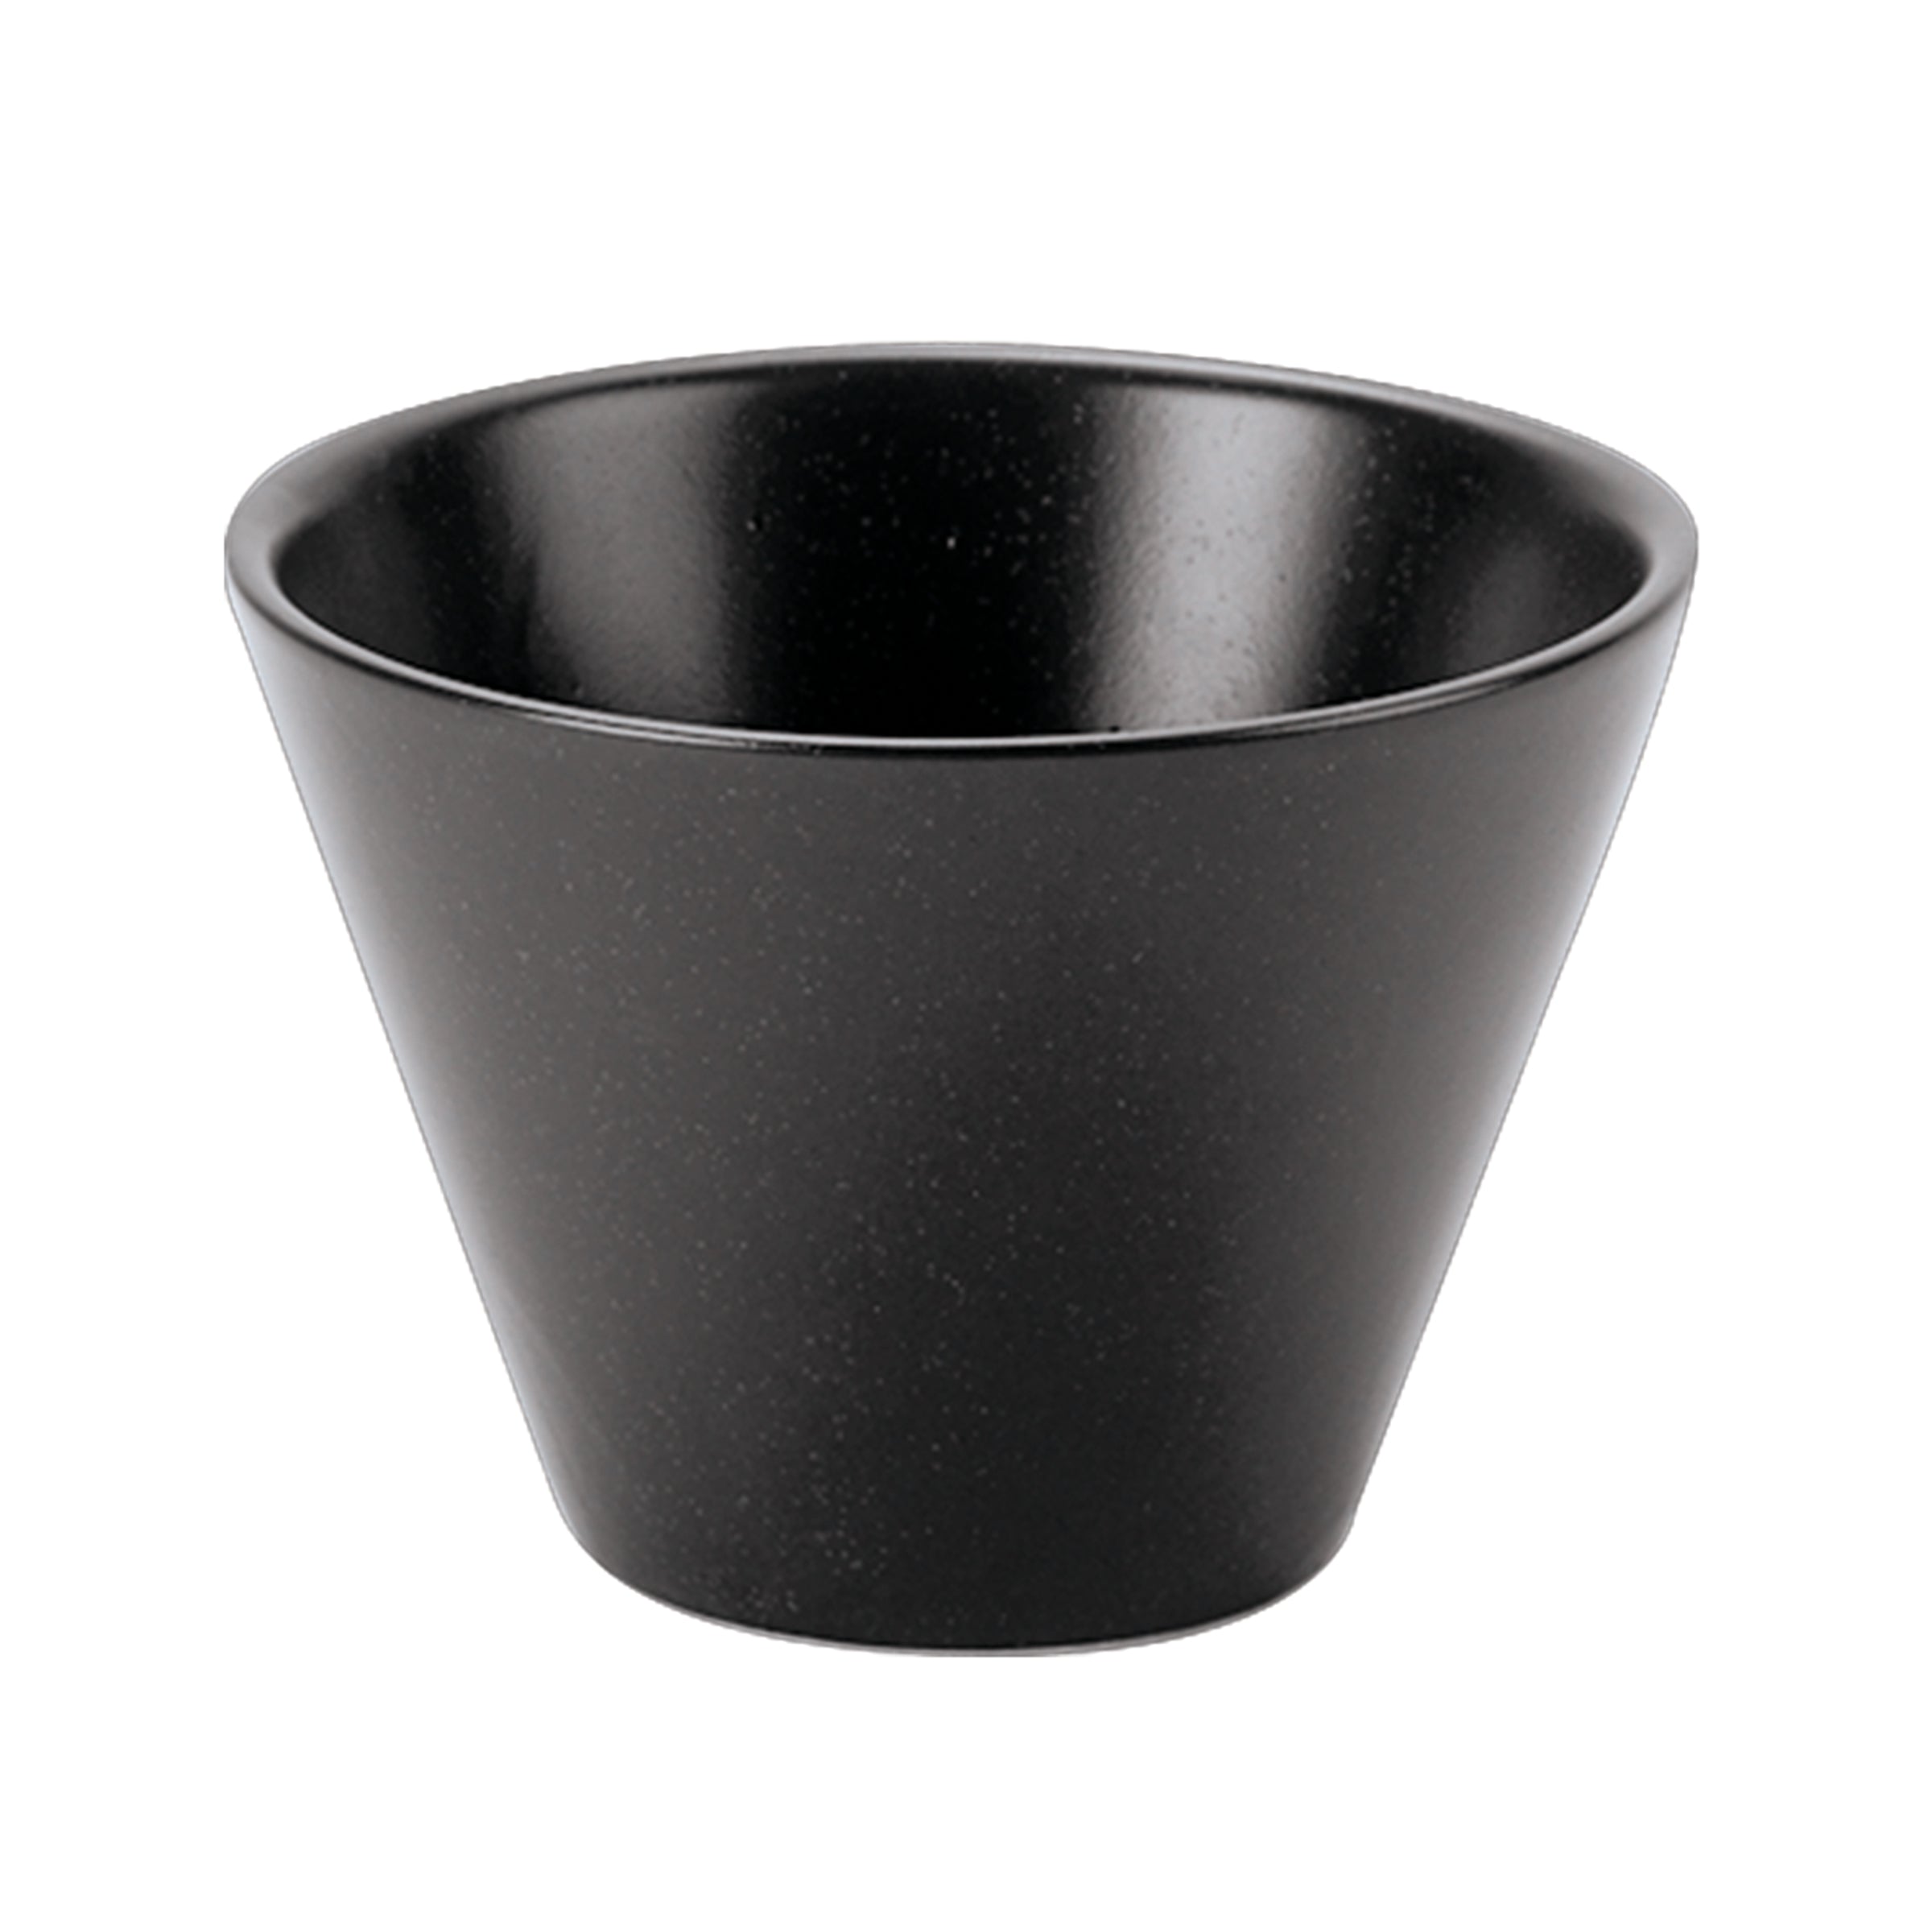 Seasons Graphite Conic Bowl 5.5cm/2.25" 5cl/1.75oz 368206GR Pack Size  6